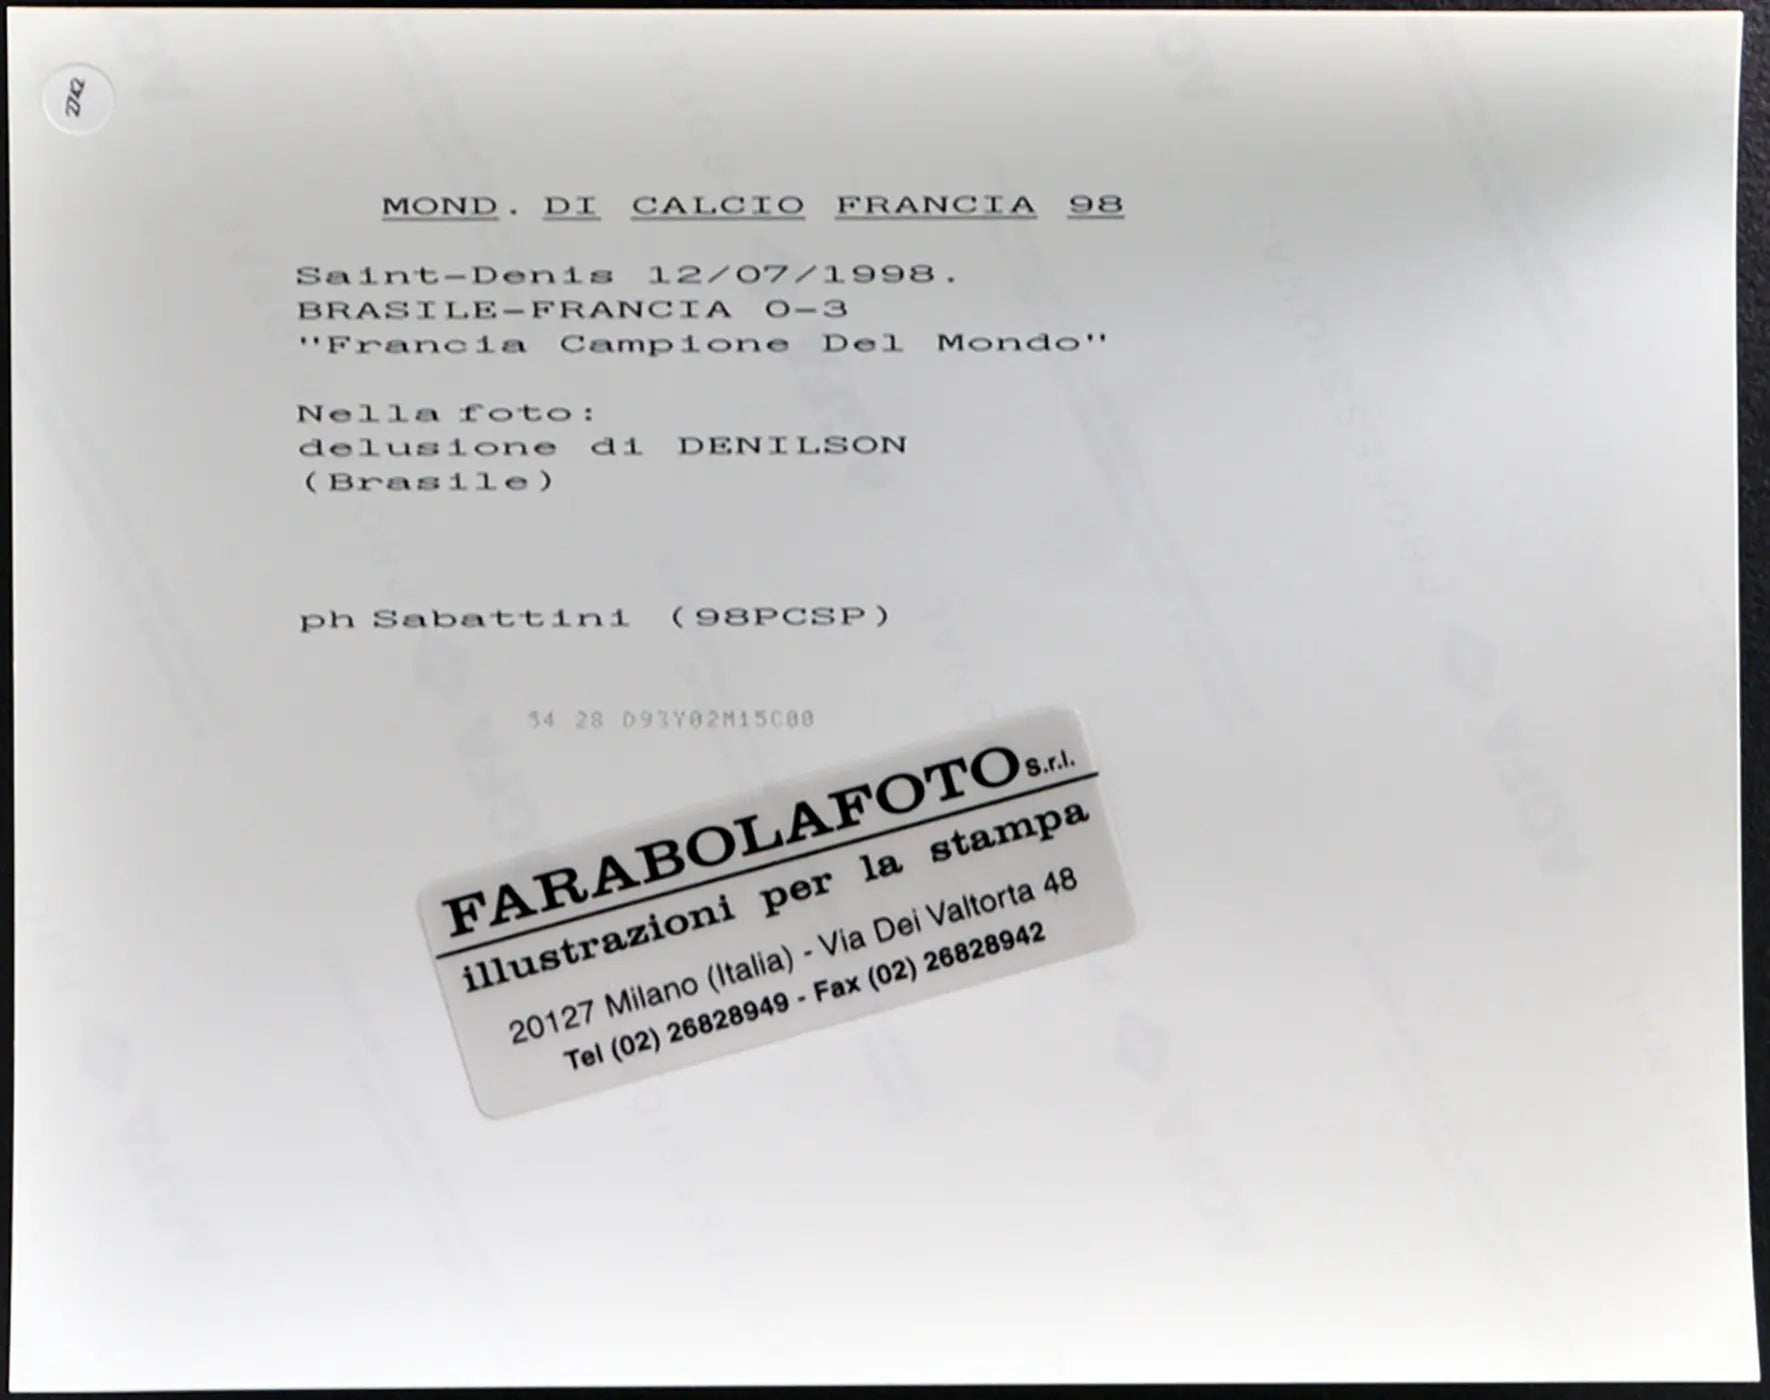 Coppa del Mondo 1998 Denilson Ft 2742 - Stampa 20x25 cm - Farabola Stampa ai sali d'argento